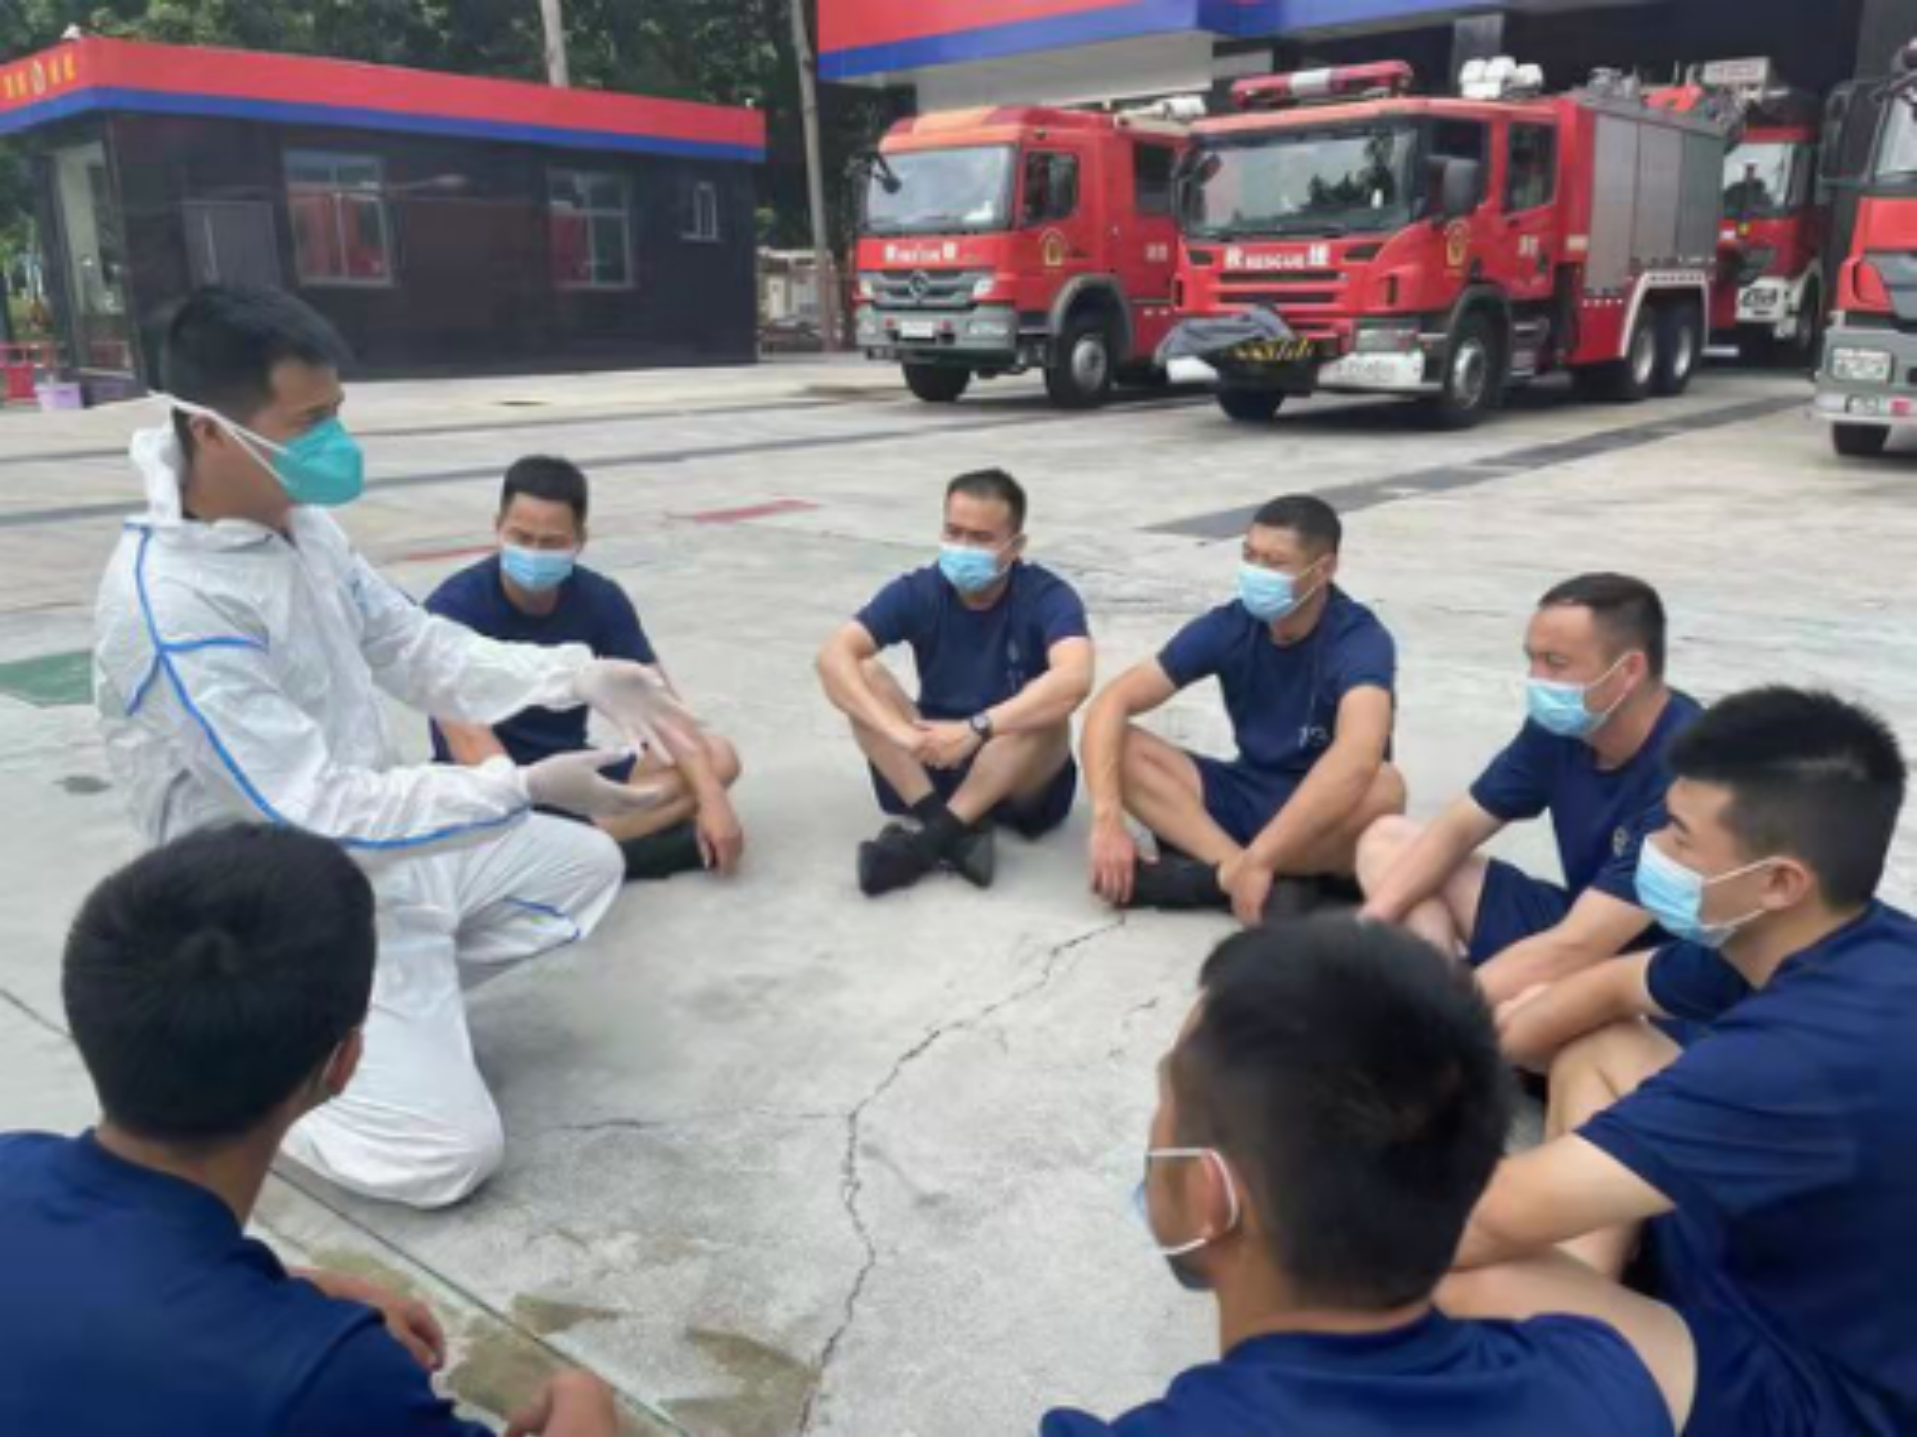 竹子林消防救援站副队长刘志文：不同的关卡，同样的坚守